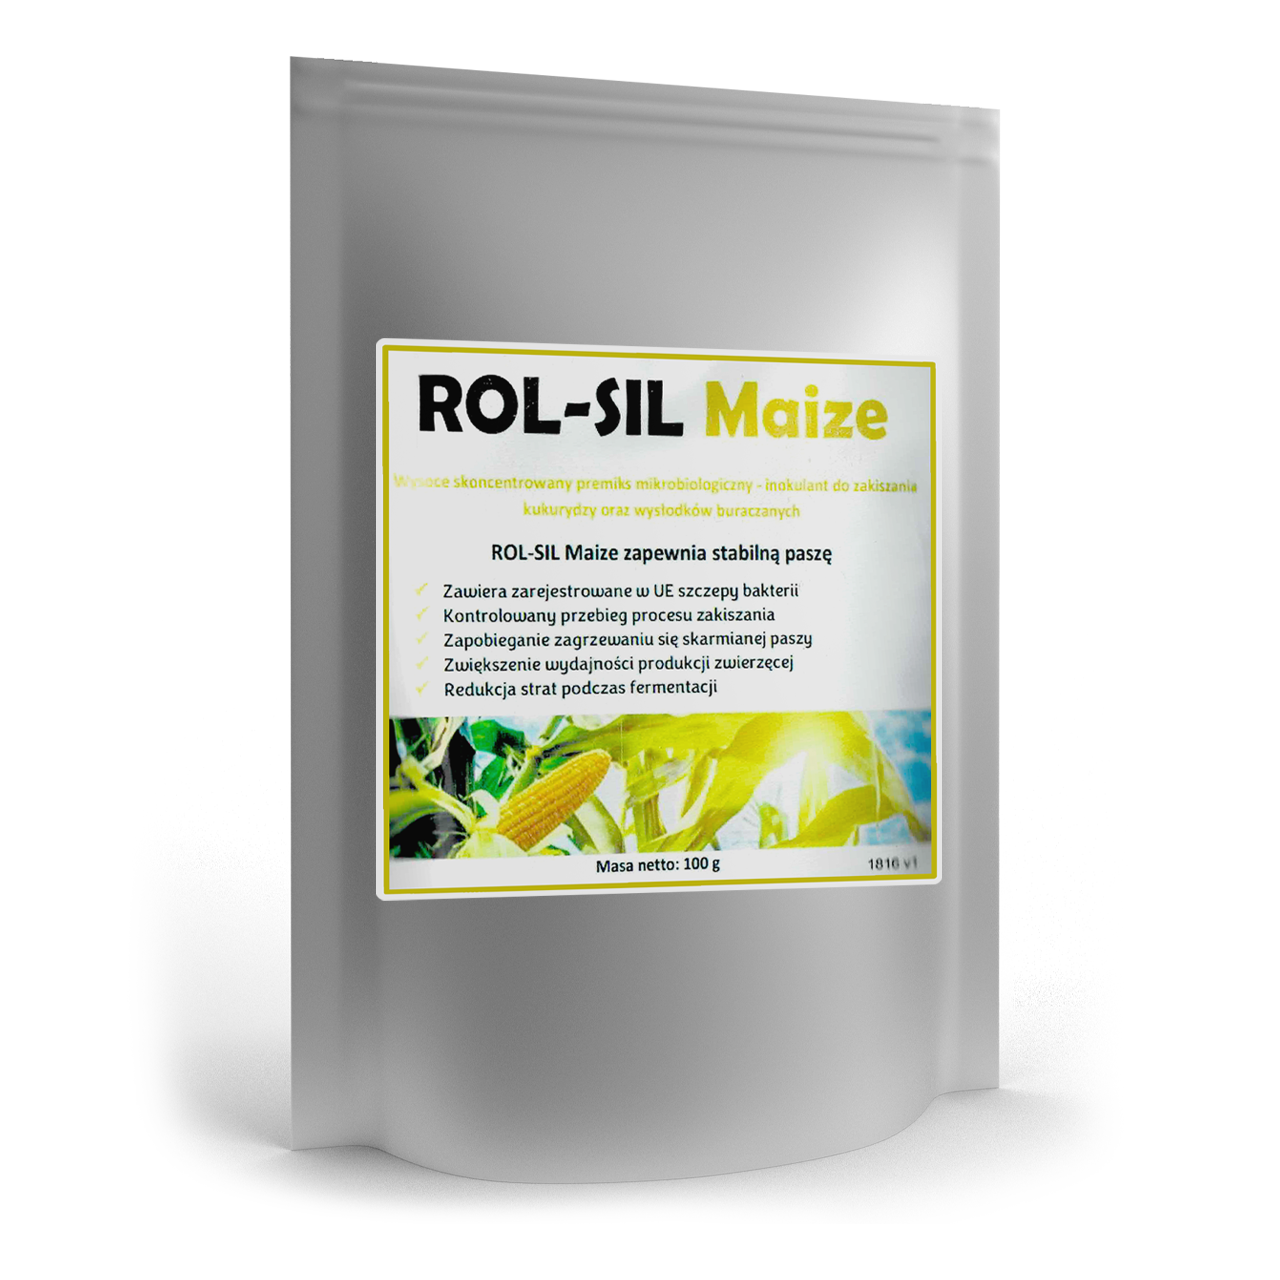 ROL-SIL Maize Inokulant mikrobiologiczny do sporządzania kiszonek